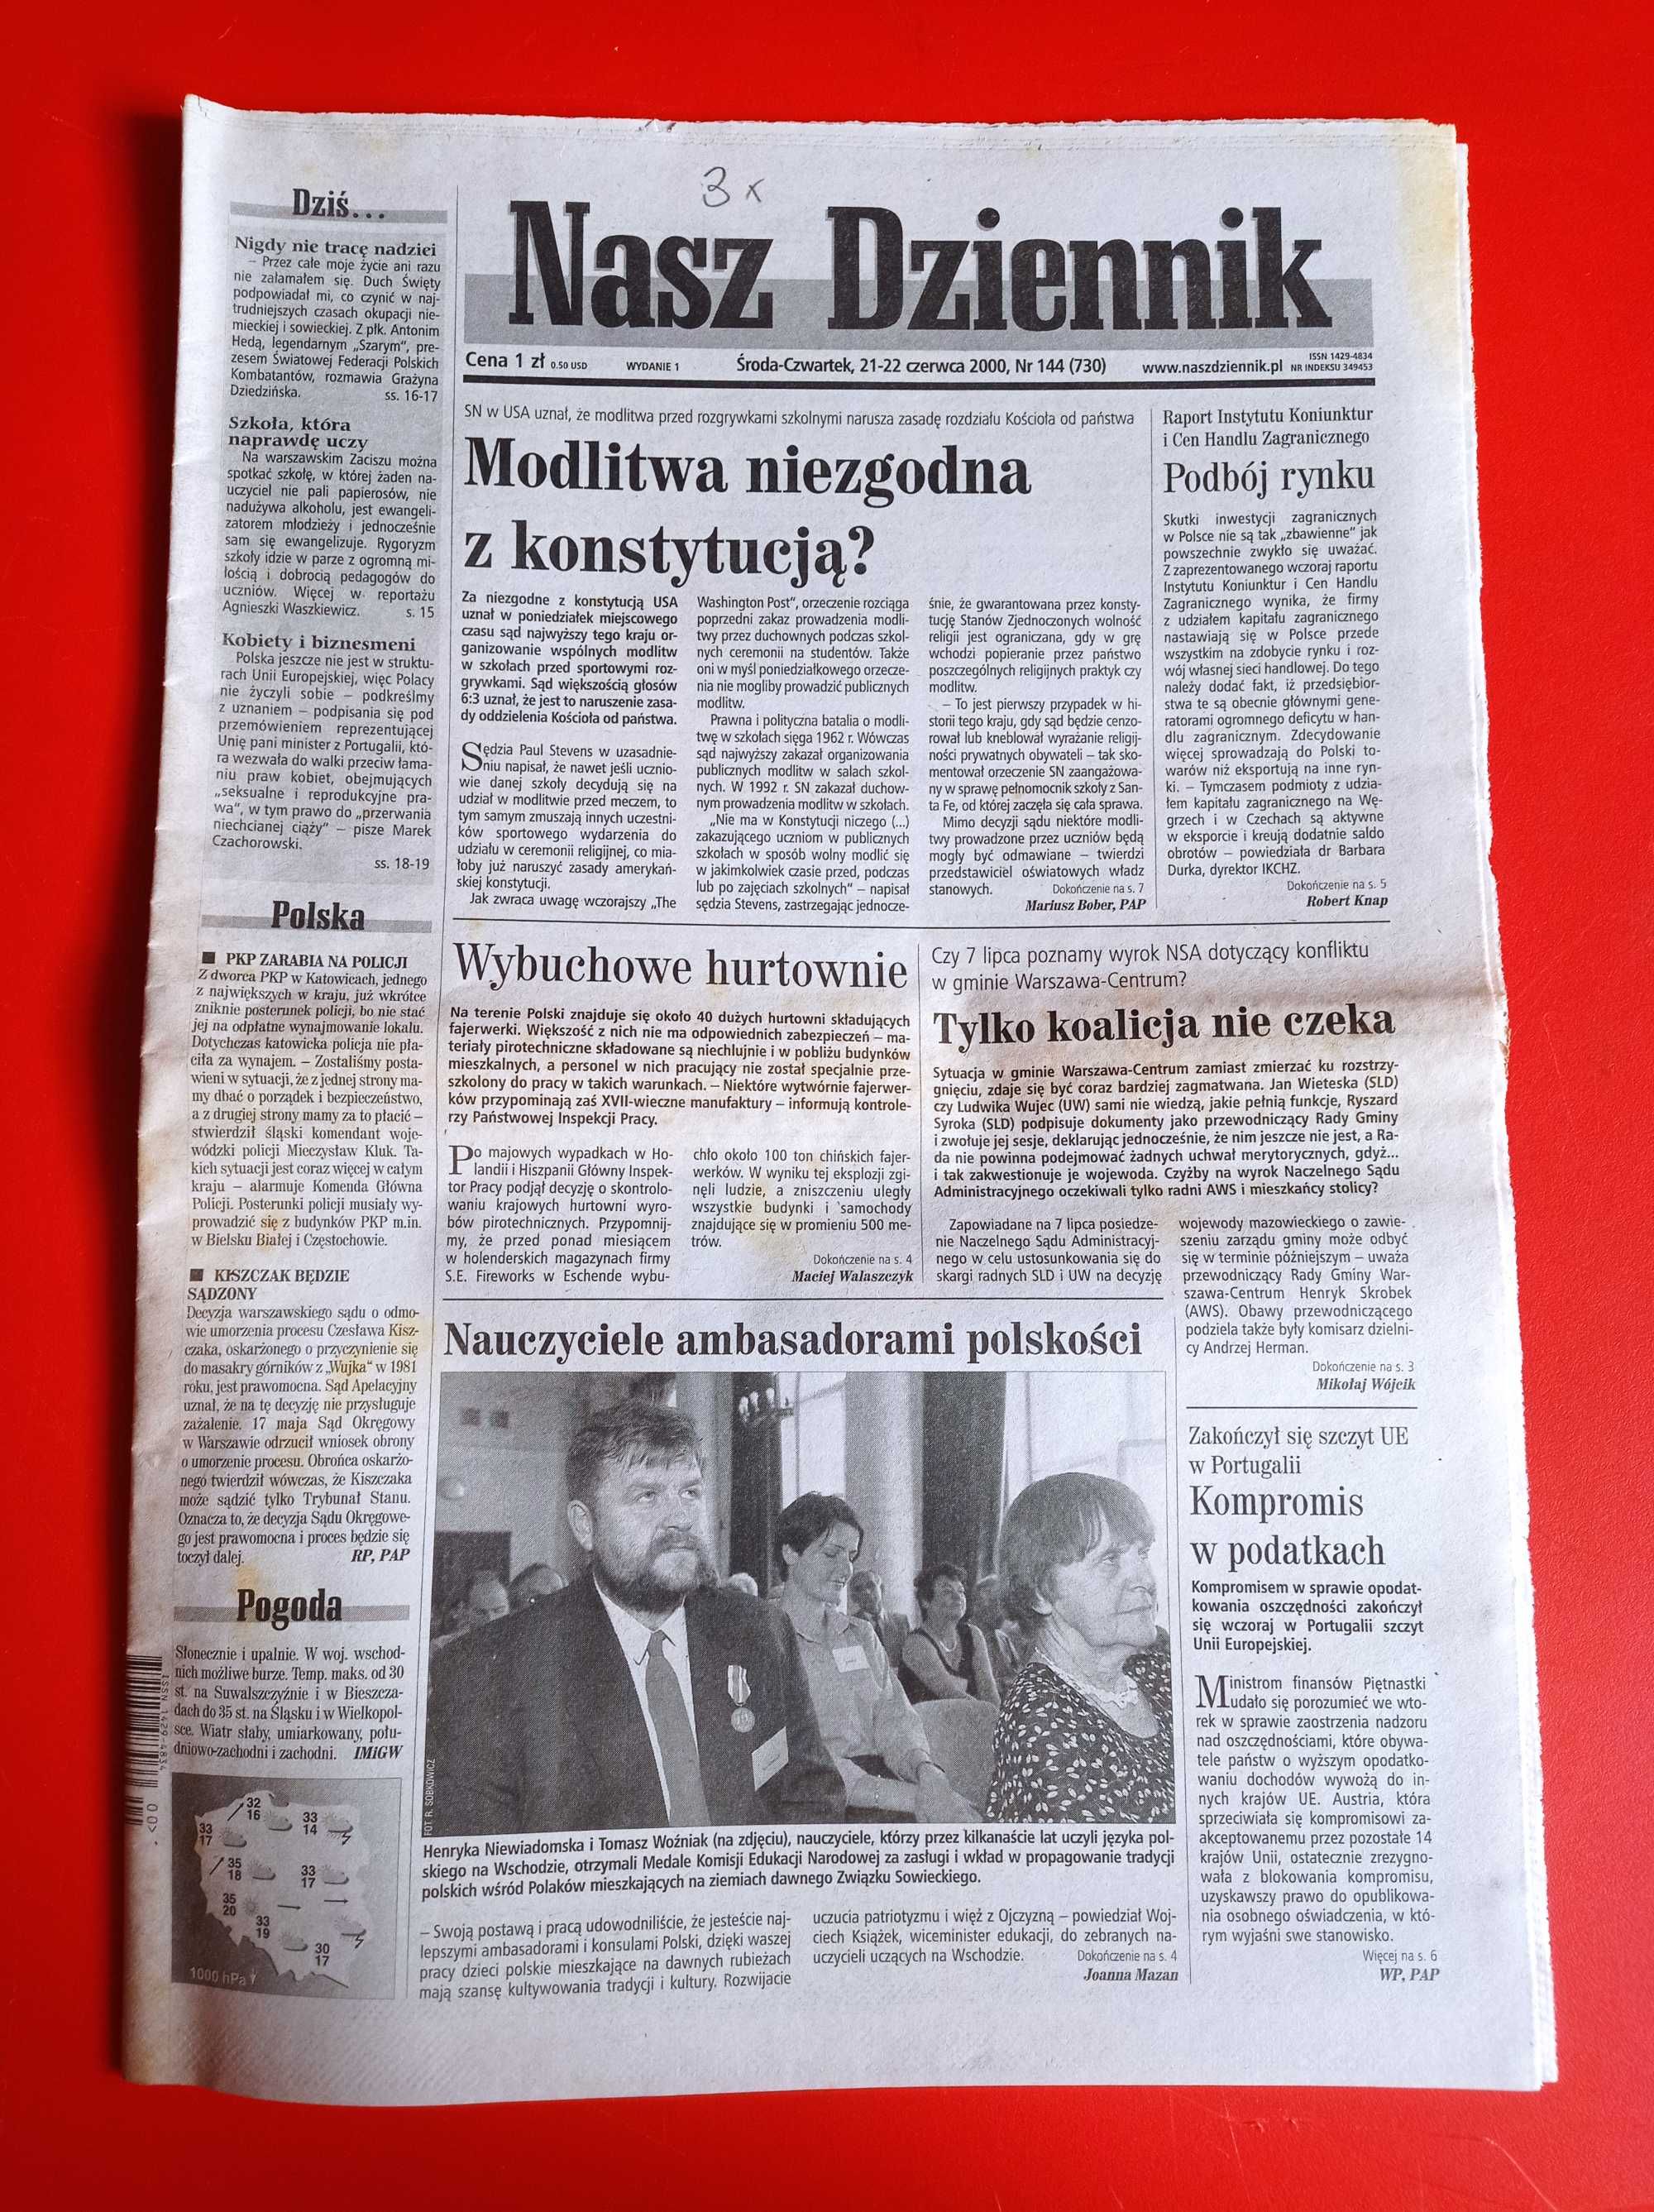 Nasz Dziennik, nr 144/2000, 21-22 czerwca 2000